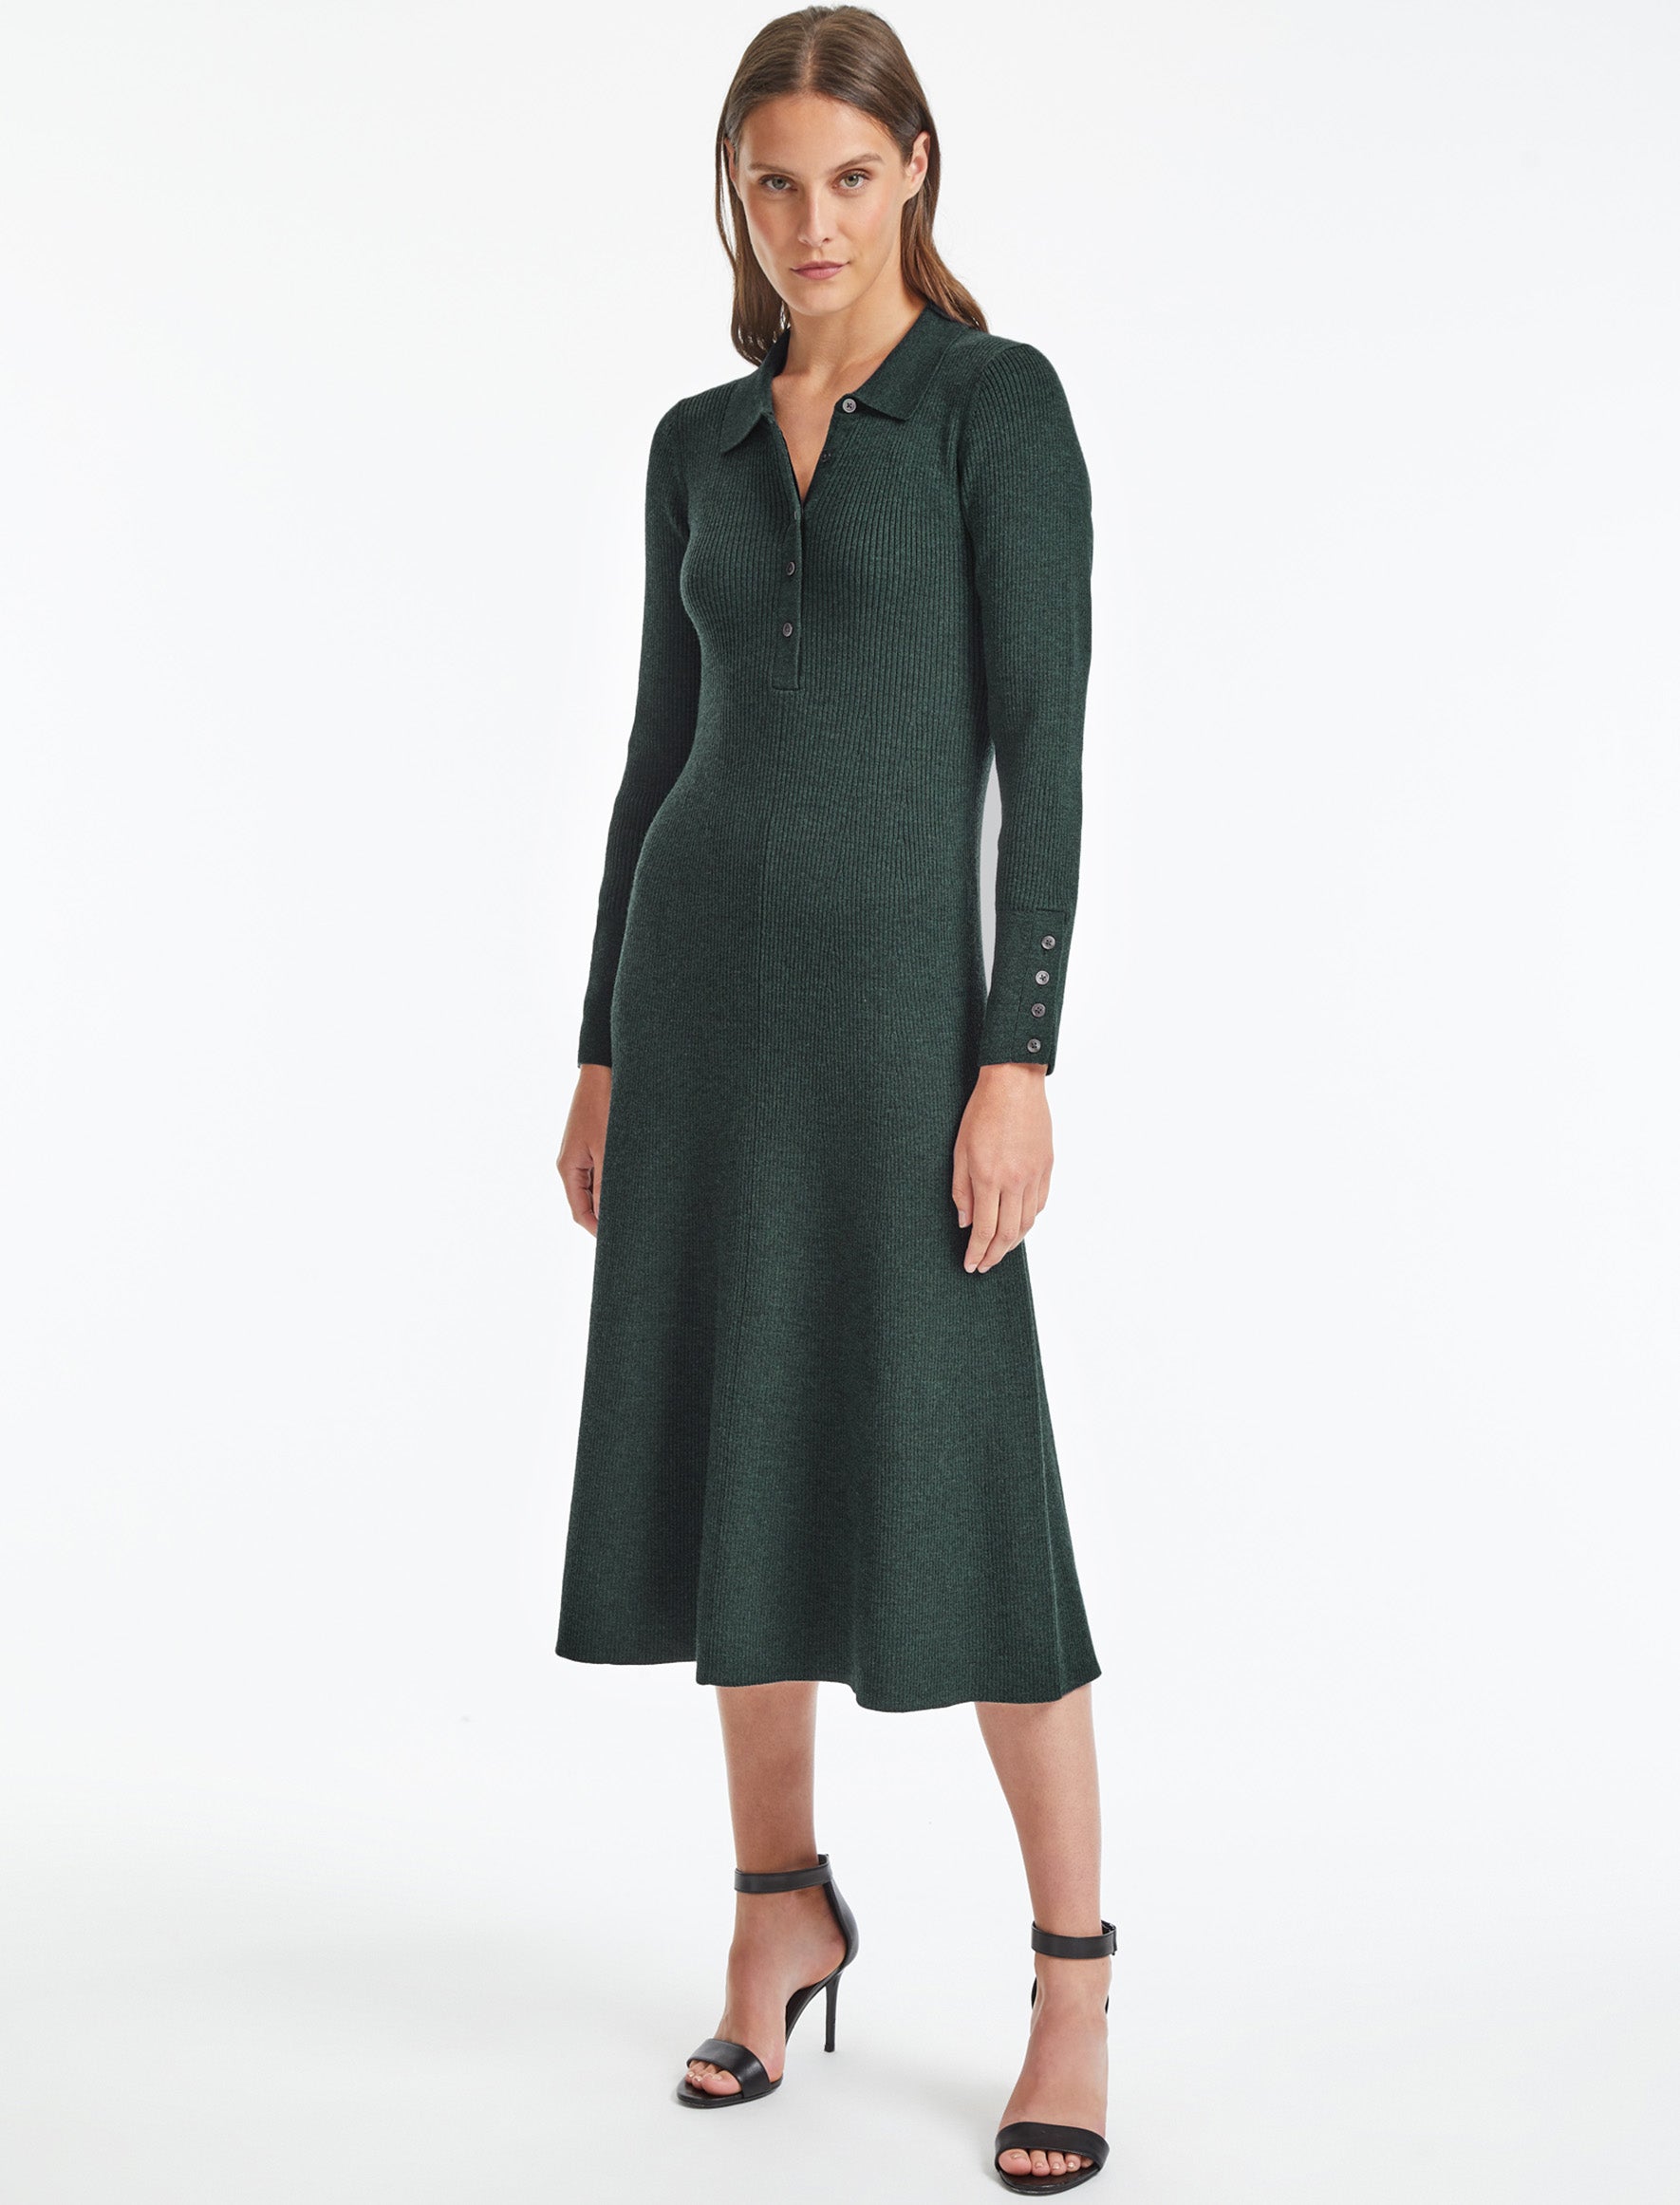 Cefinn Josie Wool Knit Dress - Dark Green